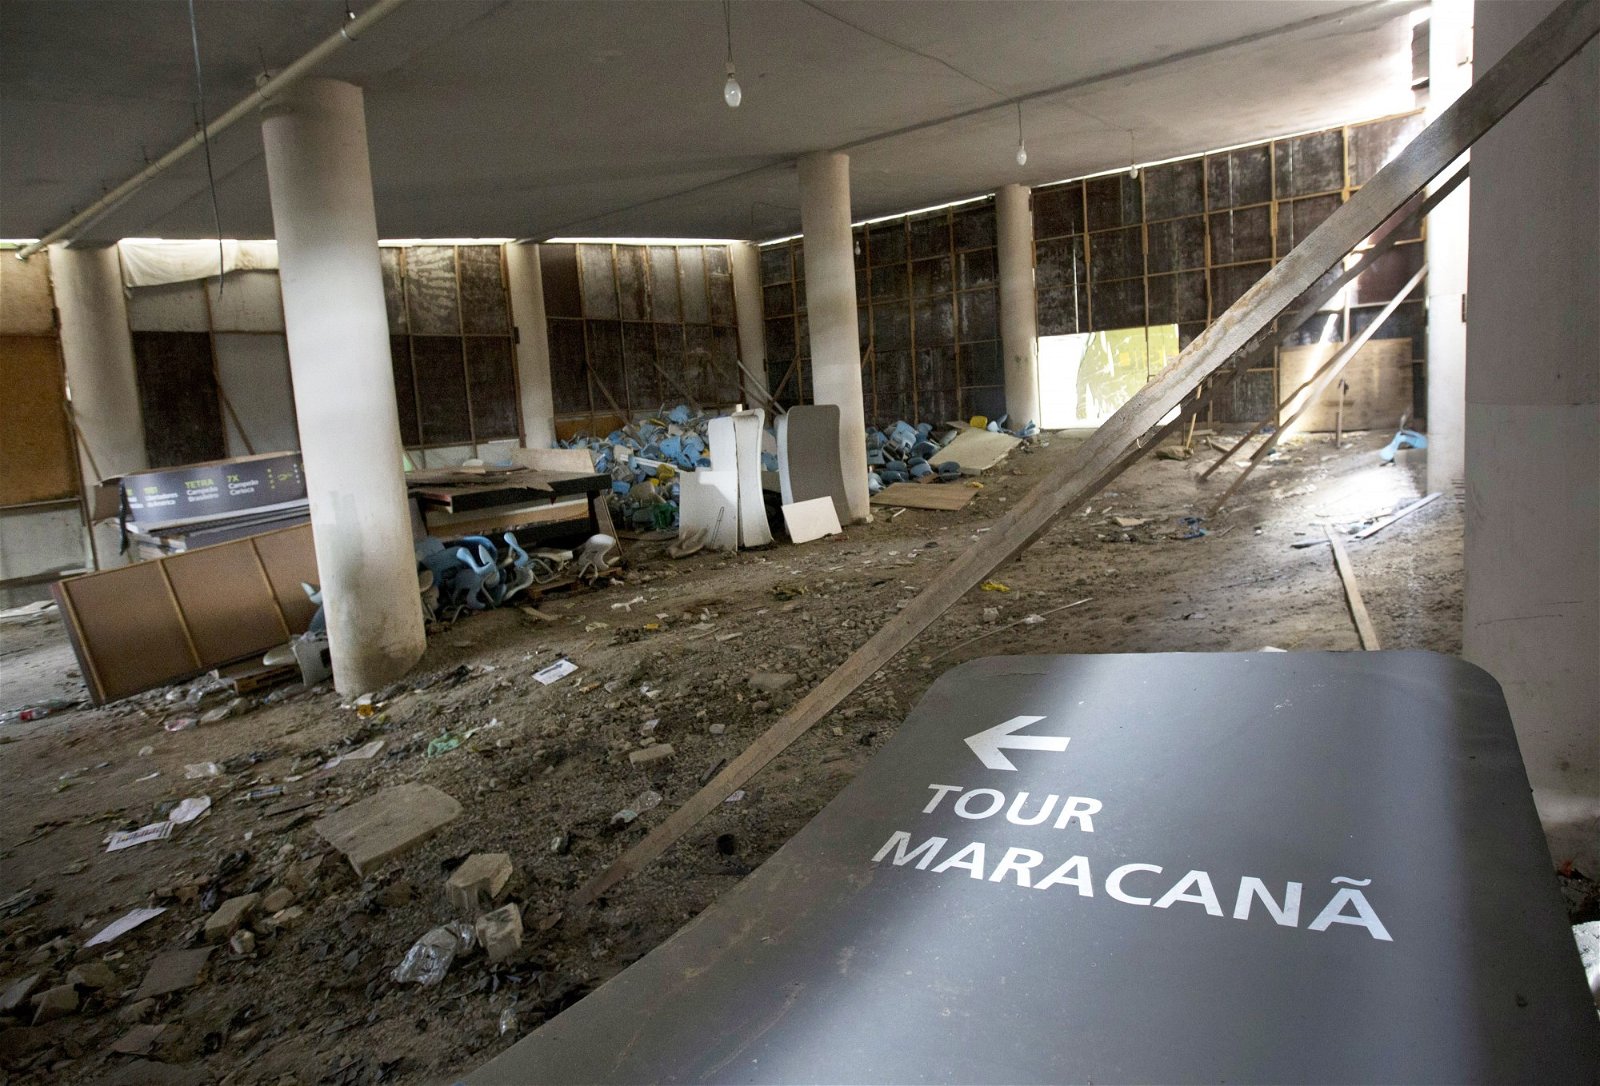 为了举行2014年世界杯足球赛和2016年里约奥运，当局花费5亿美元（逾22亿令吉）翻新里约热内卢的马拉卡纳体育馆，如今明显无人保养，连指示牌都倒下。